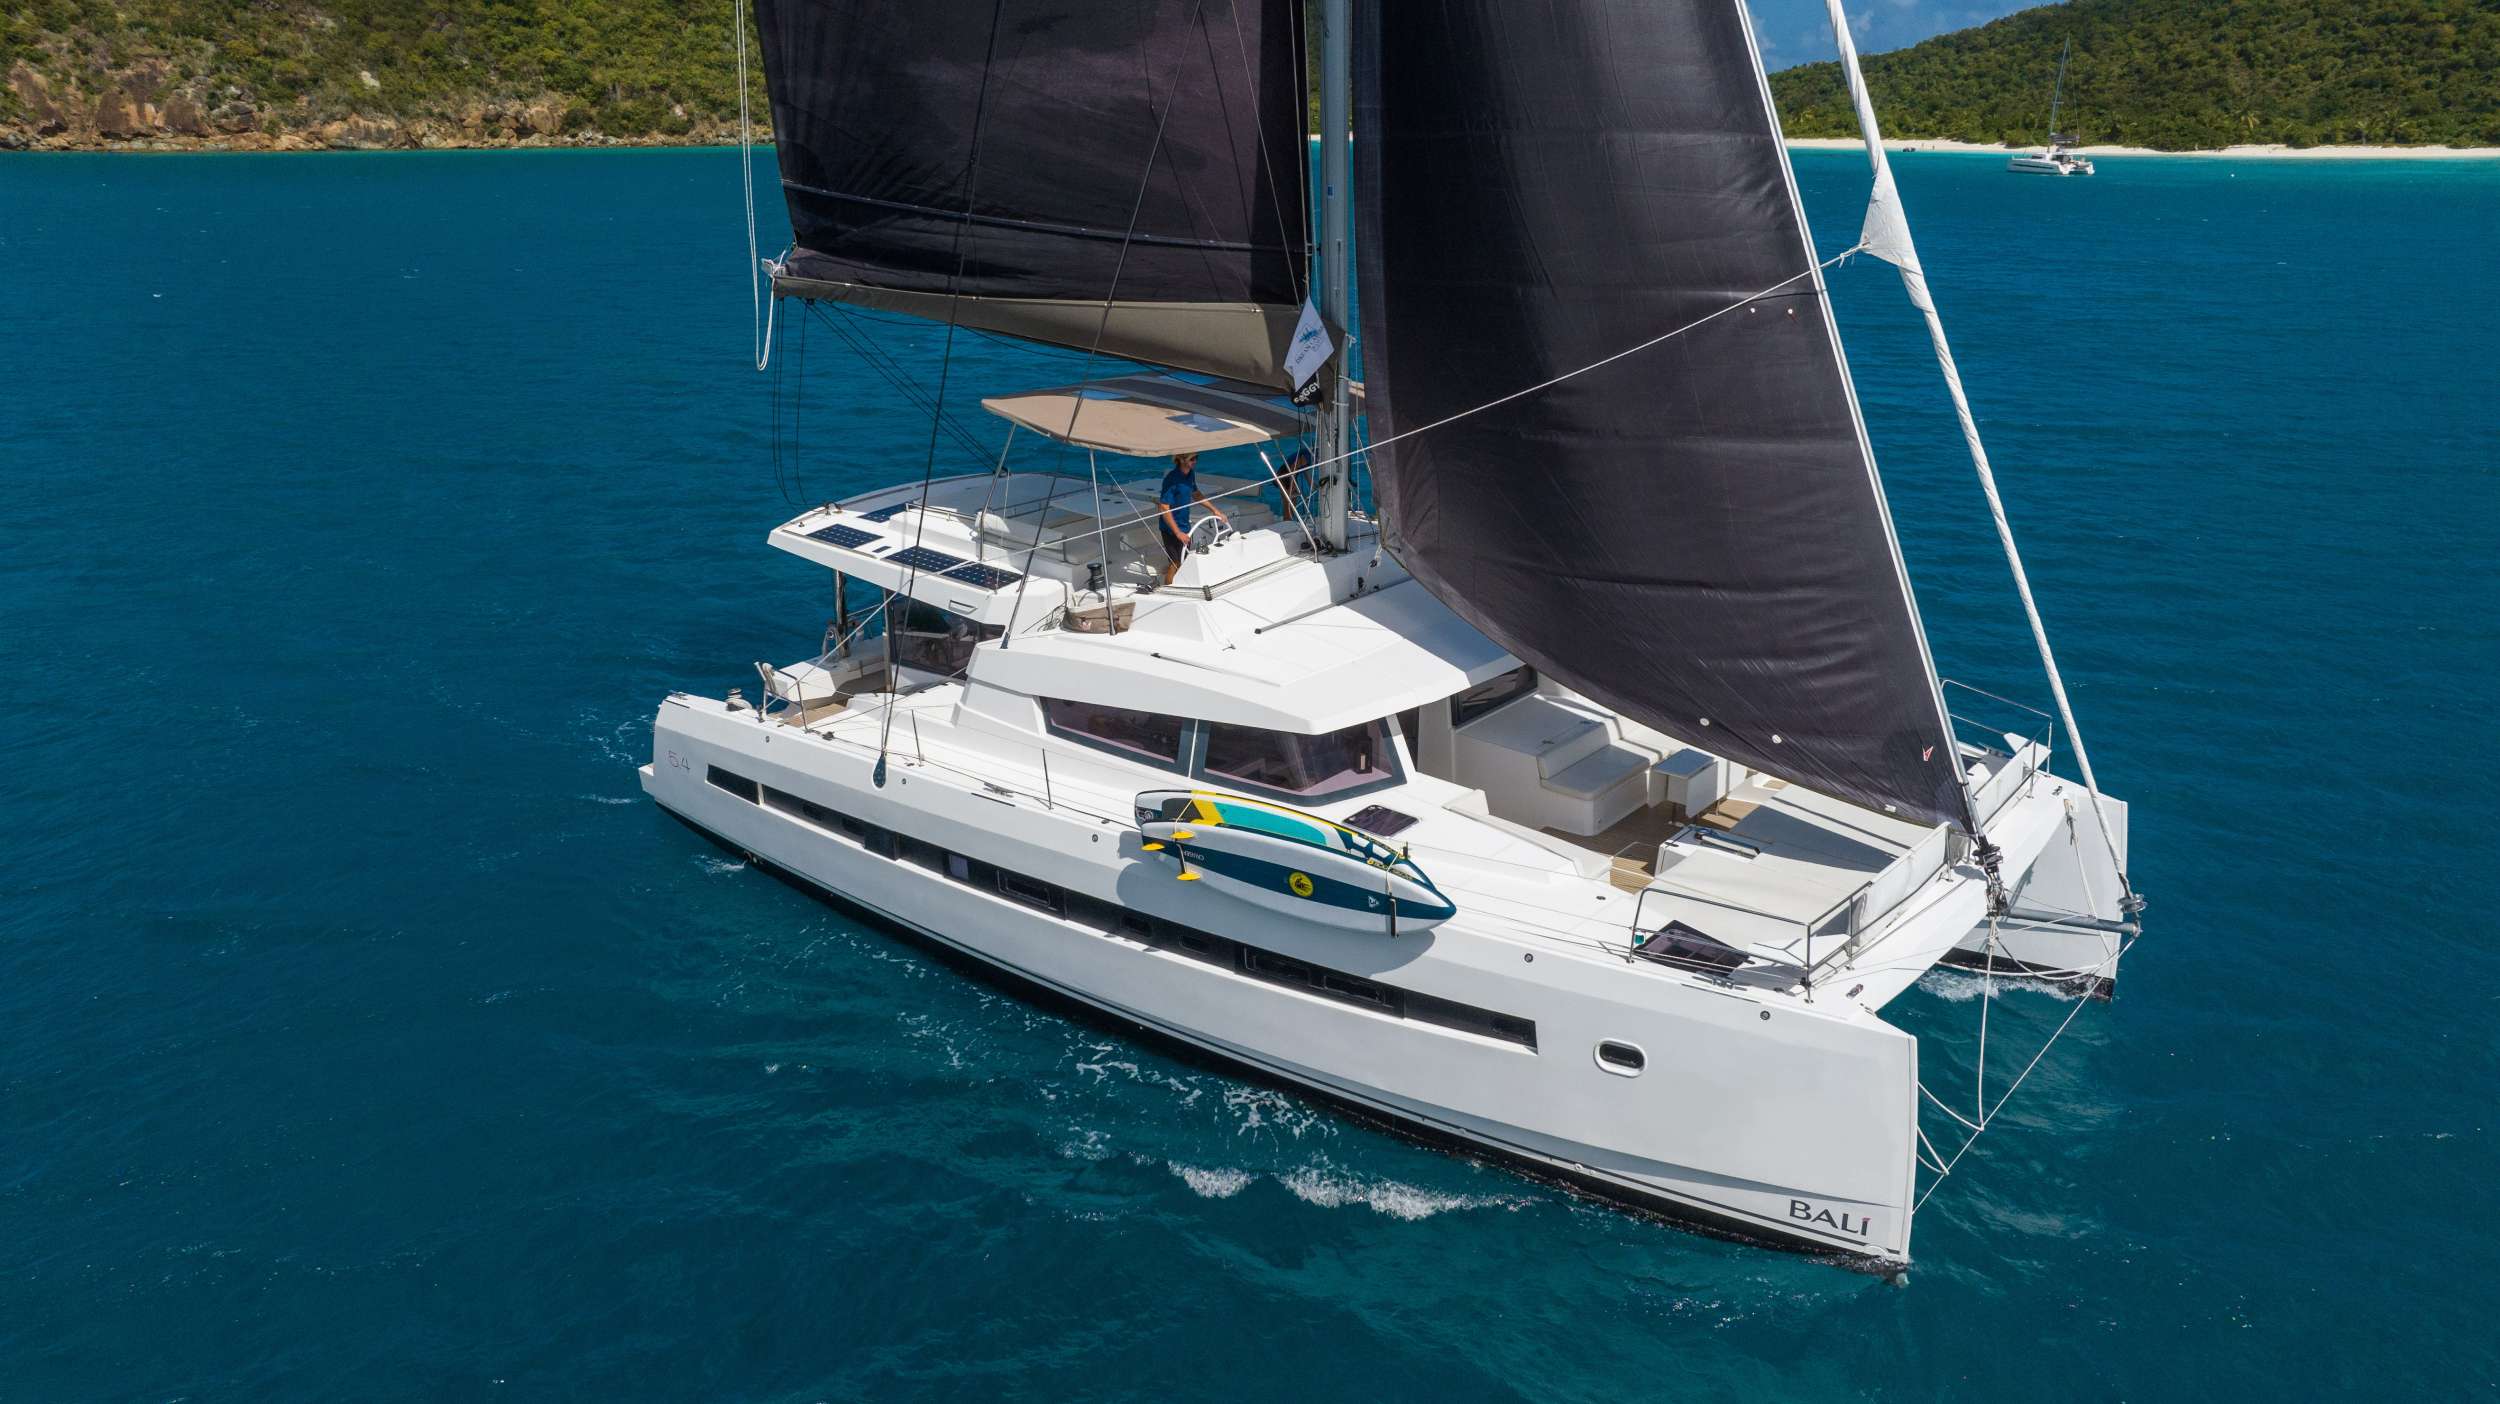 SUN DAZE 5.4 - Catamaran charter US Virgin Islands & Boat hire in Caribbean 1